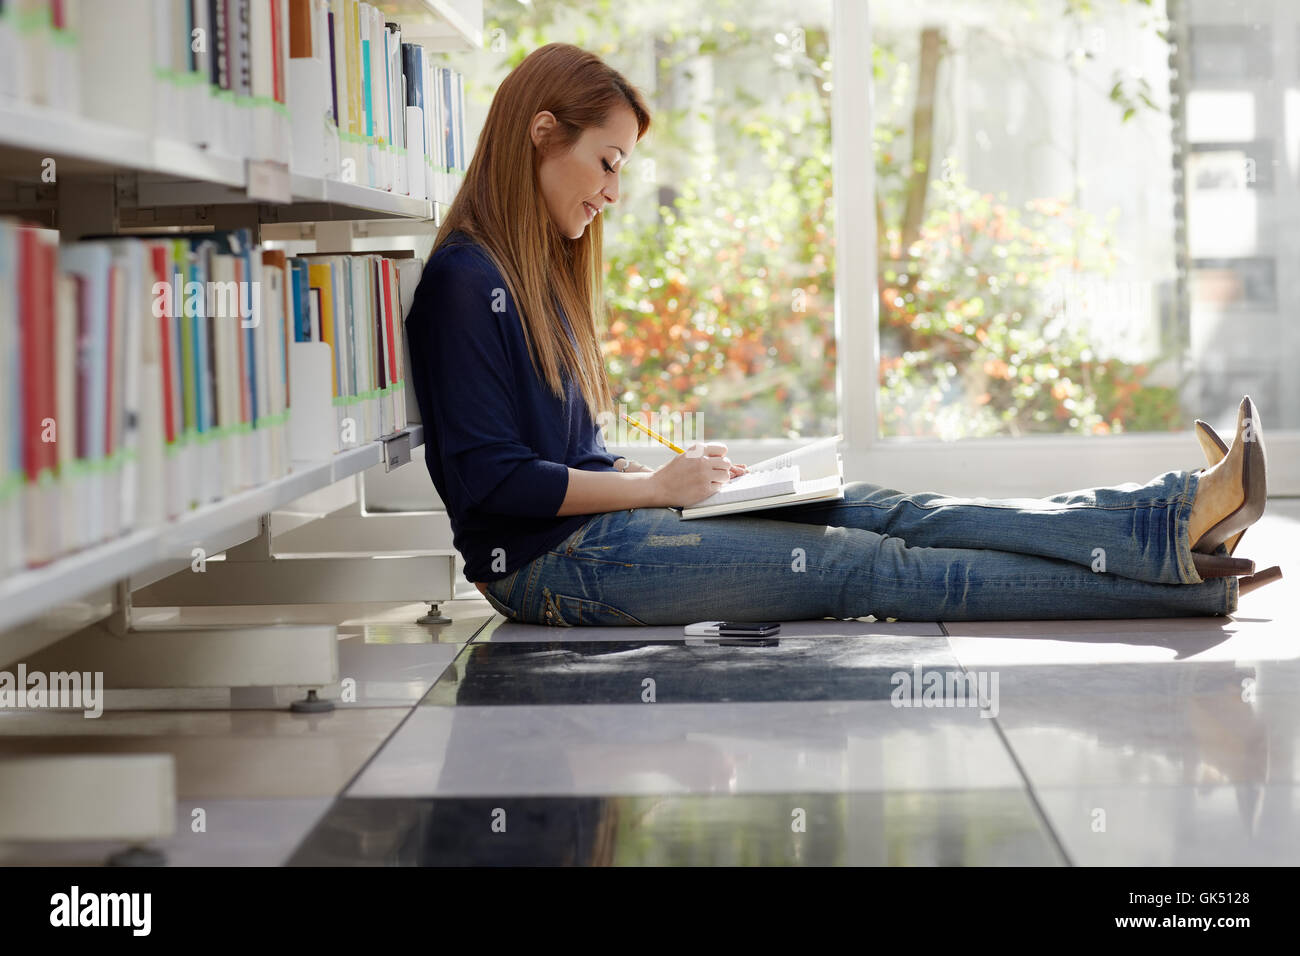 Reading on property. Девушка в библиотеке. Девушка в архиве фото. Девушка сидит на полу с книгой. Девушка учится в библиотеке.